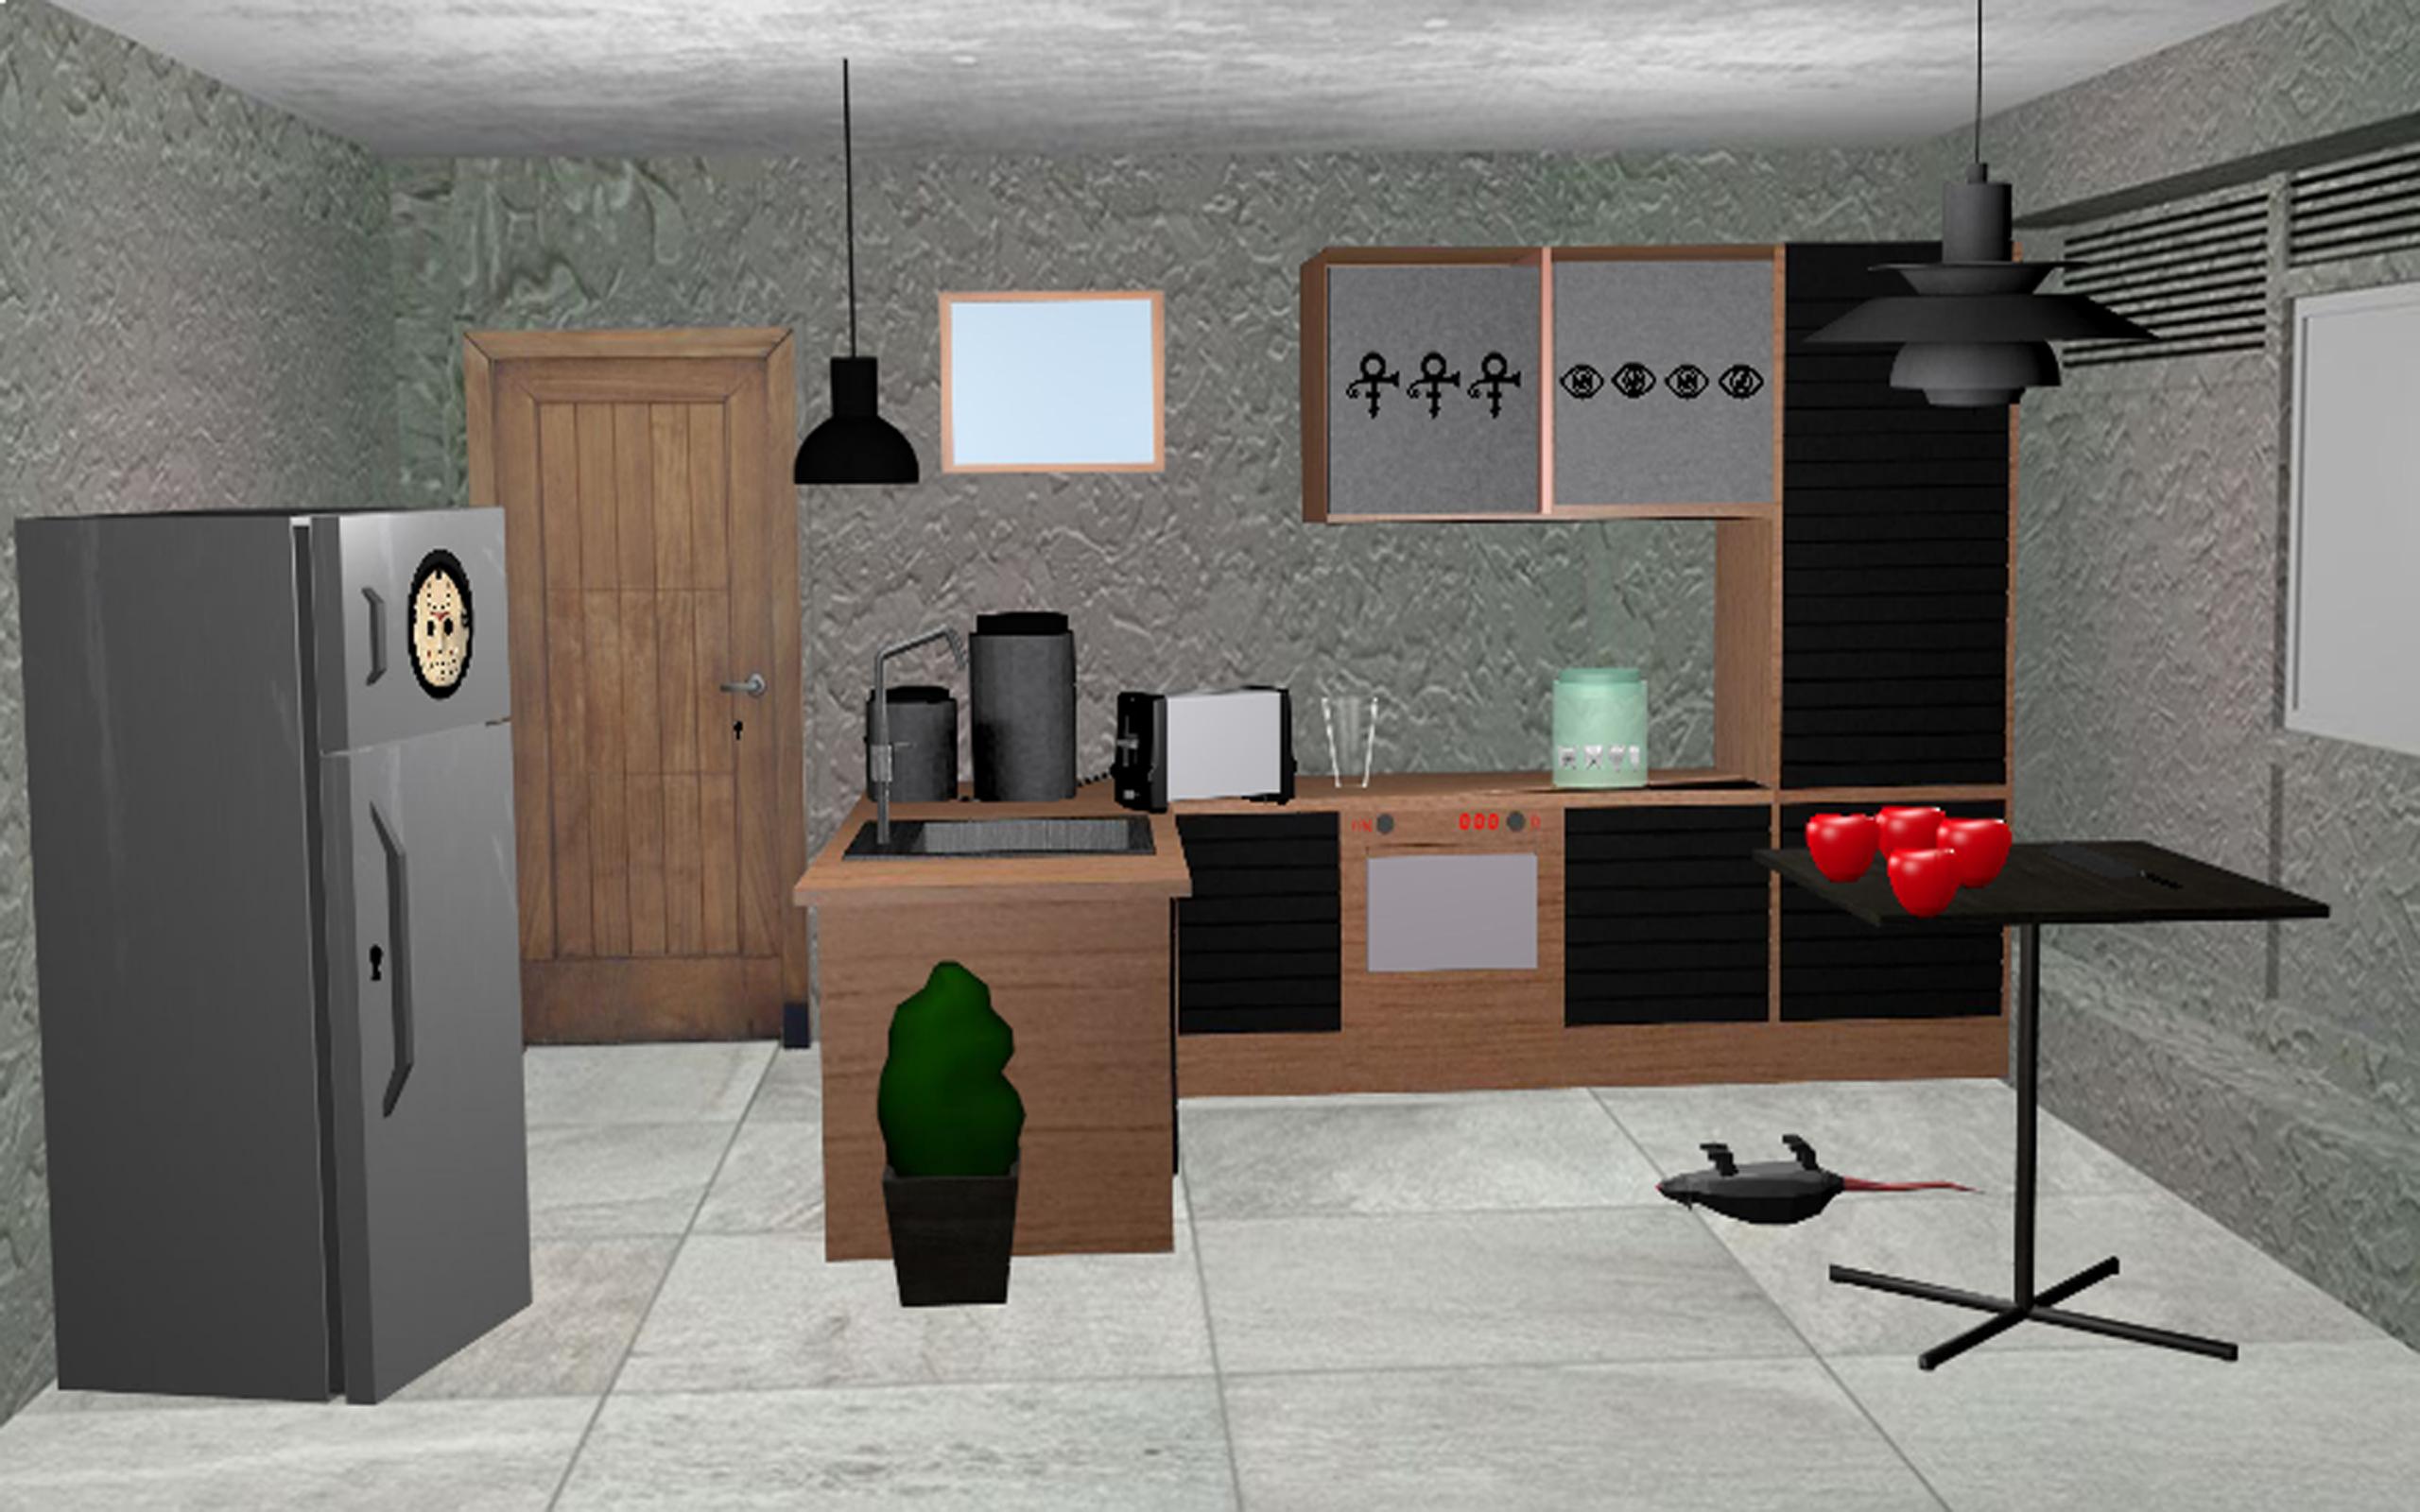 Игра 3d Escape Room. Игра Residence высокая в шляпе. 3d Escape Room Design 2023. Butcher House Escape Horror Room ￼ mobile szrplays 497 подписчиков.